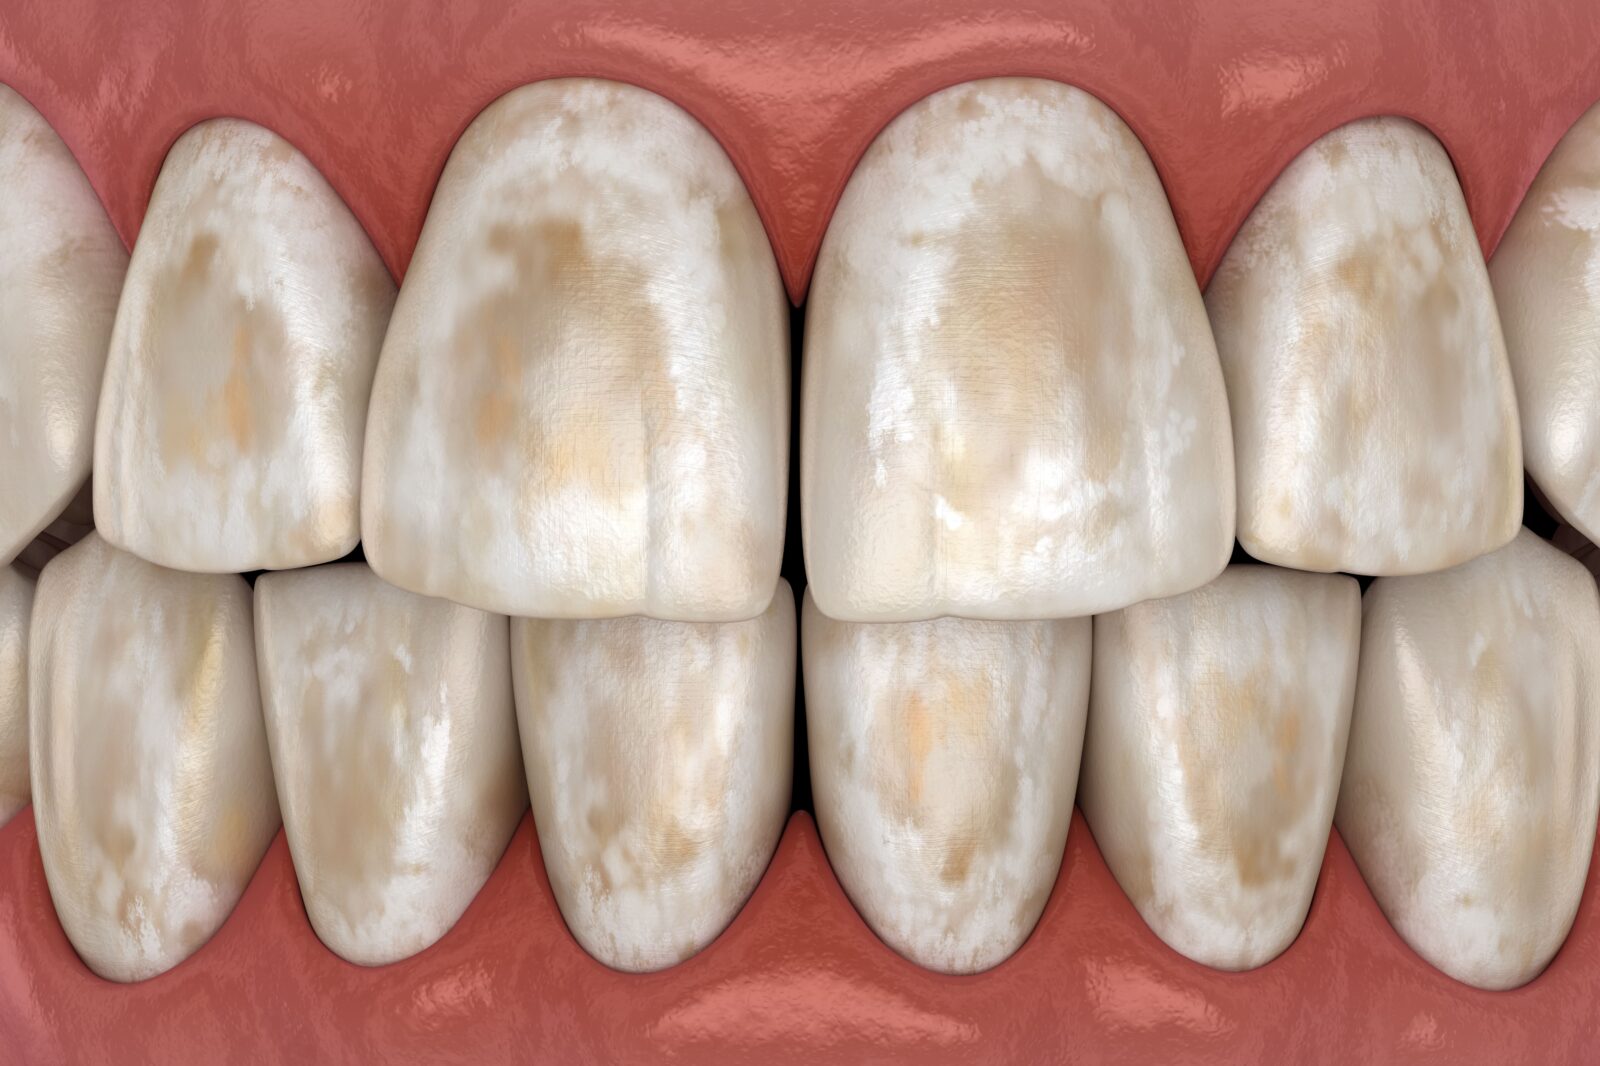 worn tooth enamel